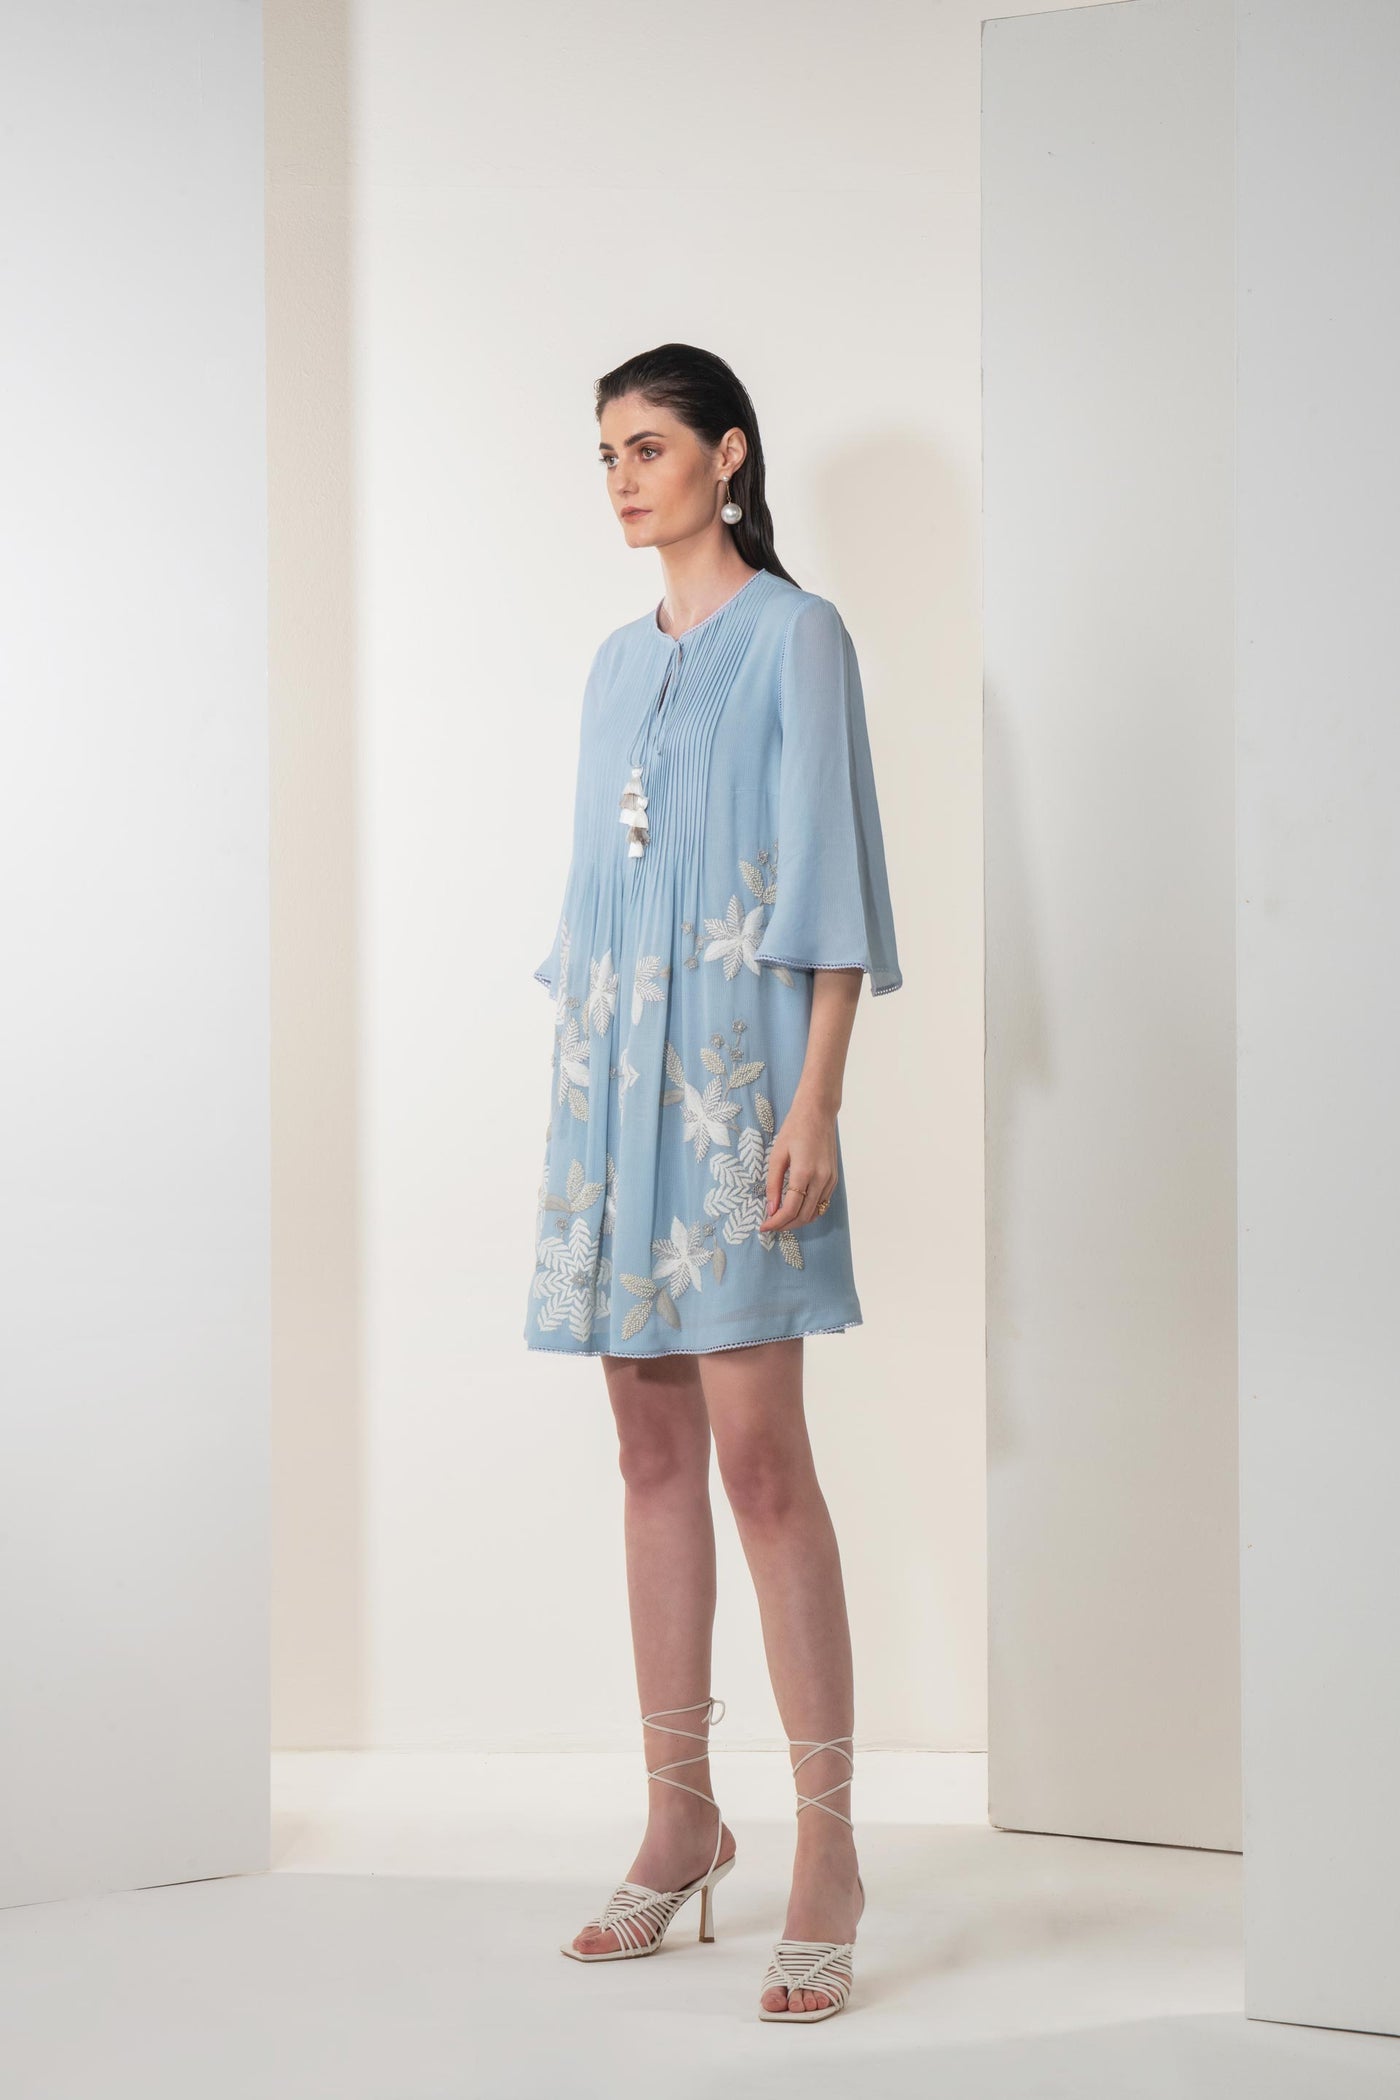 Namrata Joshipura Viola Bloom Gathered Dress blue western indian designer wear online shopping melange singapore